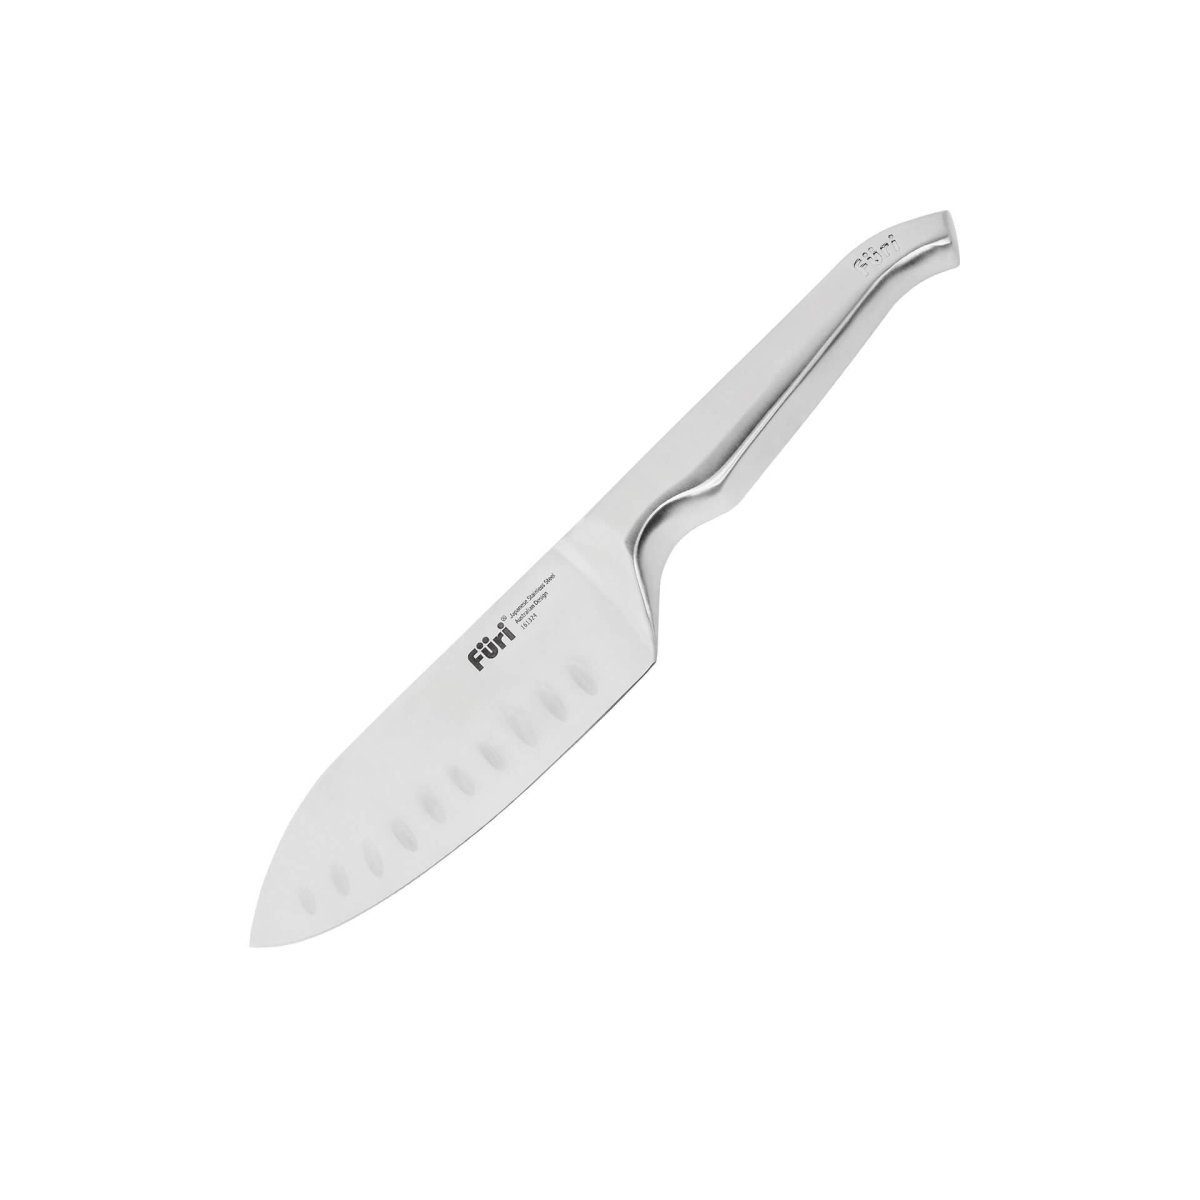 Füri Santokumesser, Santoku Allzweckmesser: Das Messer aus einem Guss mit  ergonomisch geformten Griff - einzigartiges Design kombiniert mit perfekter  Handhabung online kaufen | OTTO